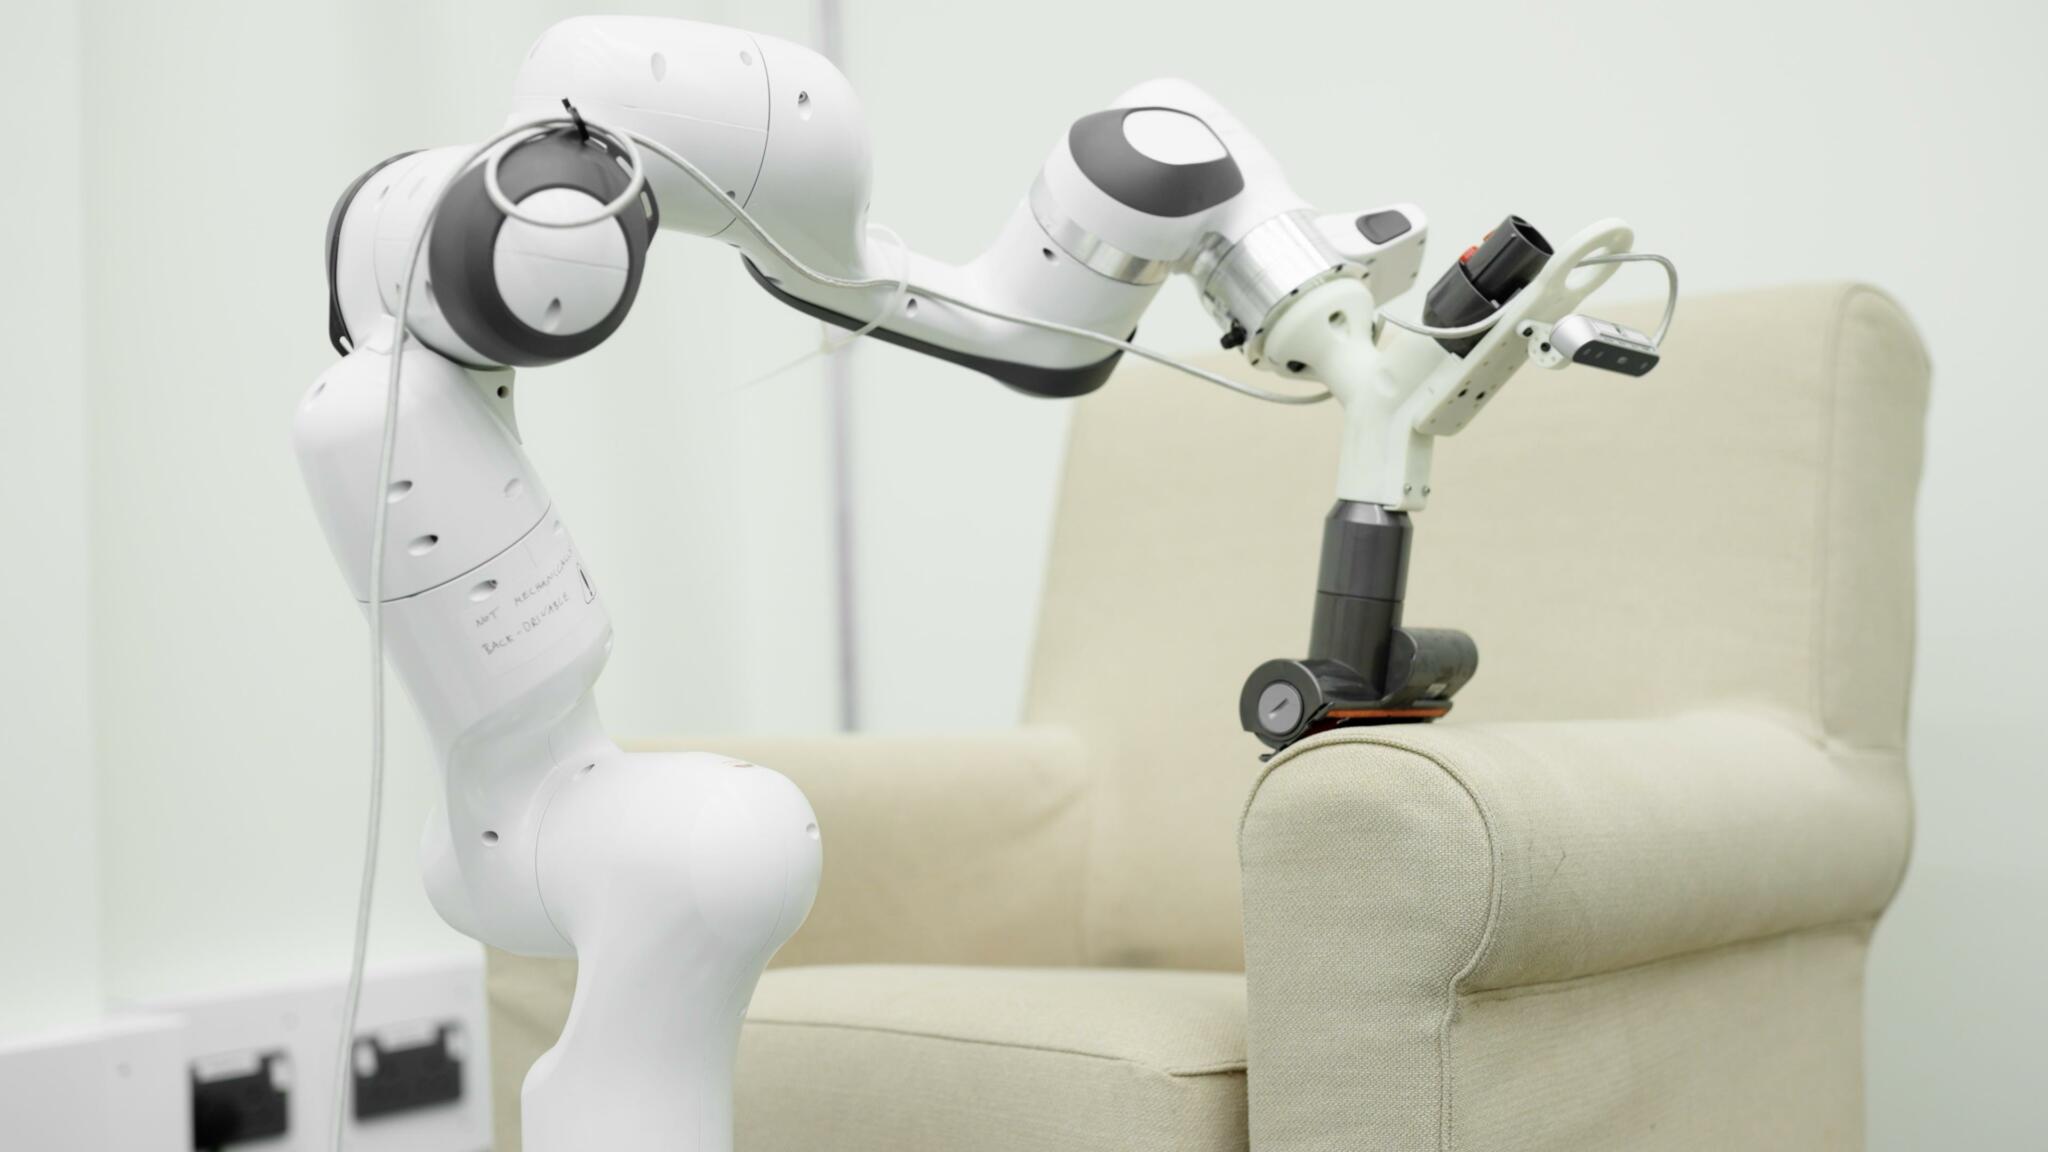 大舉進攻生活自動化領域 Dyson將展開最大規模招聘助產家事機器人